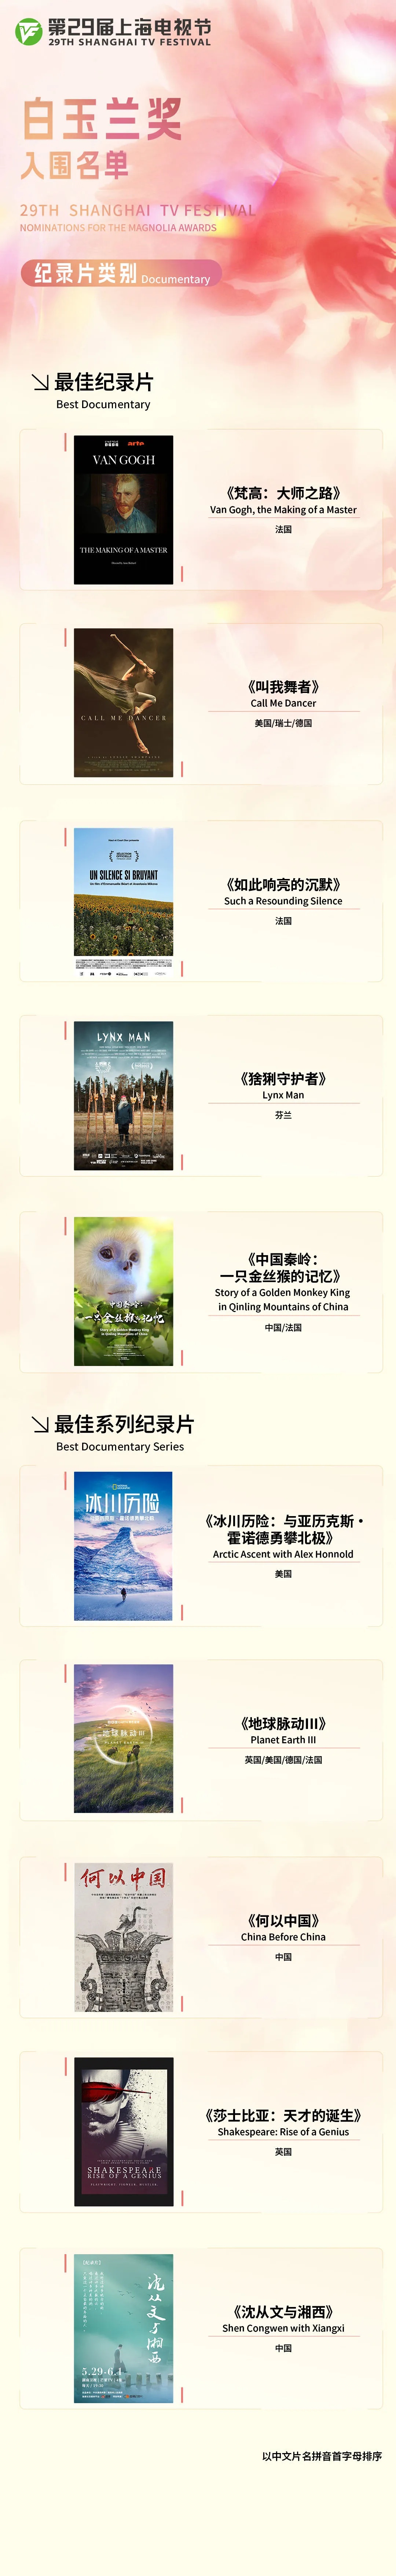 第29届上海电视节白玉兰奖入围名单公布